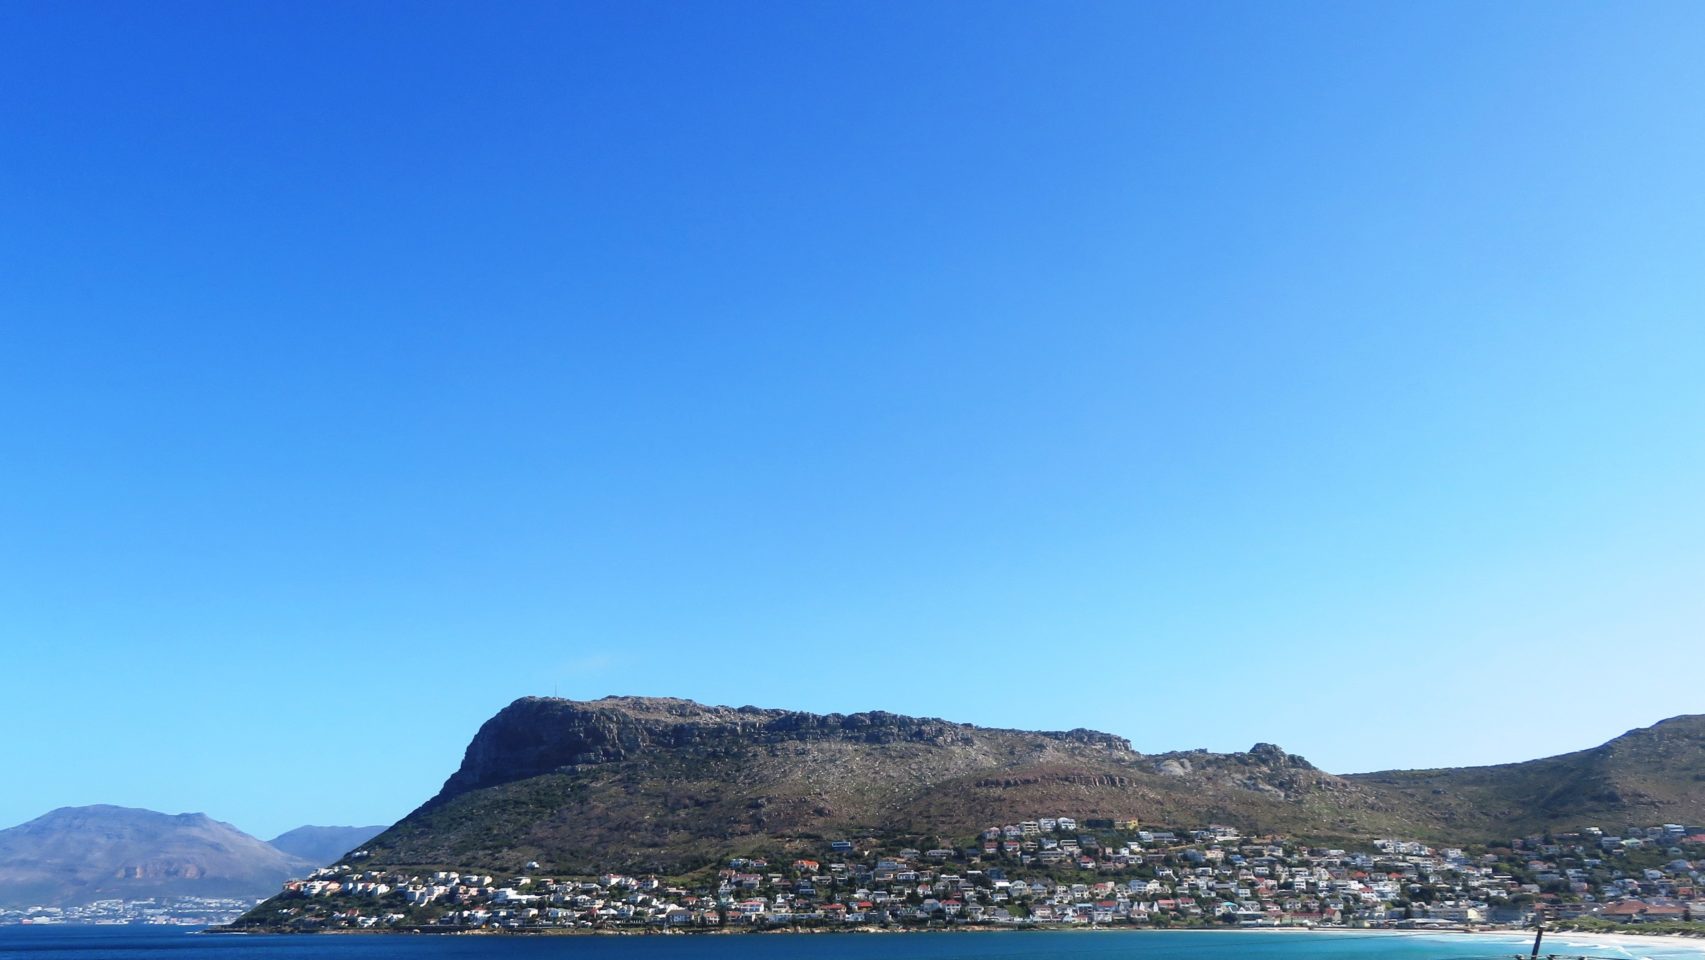 Cape Peninsula in Cape Town, South Africa